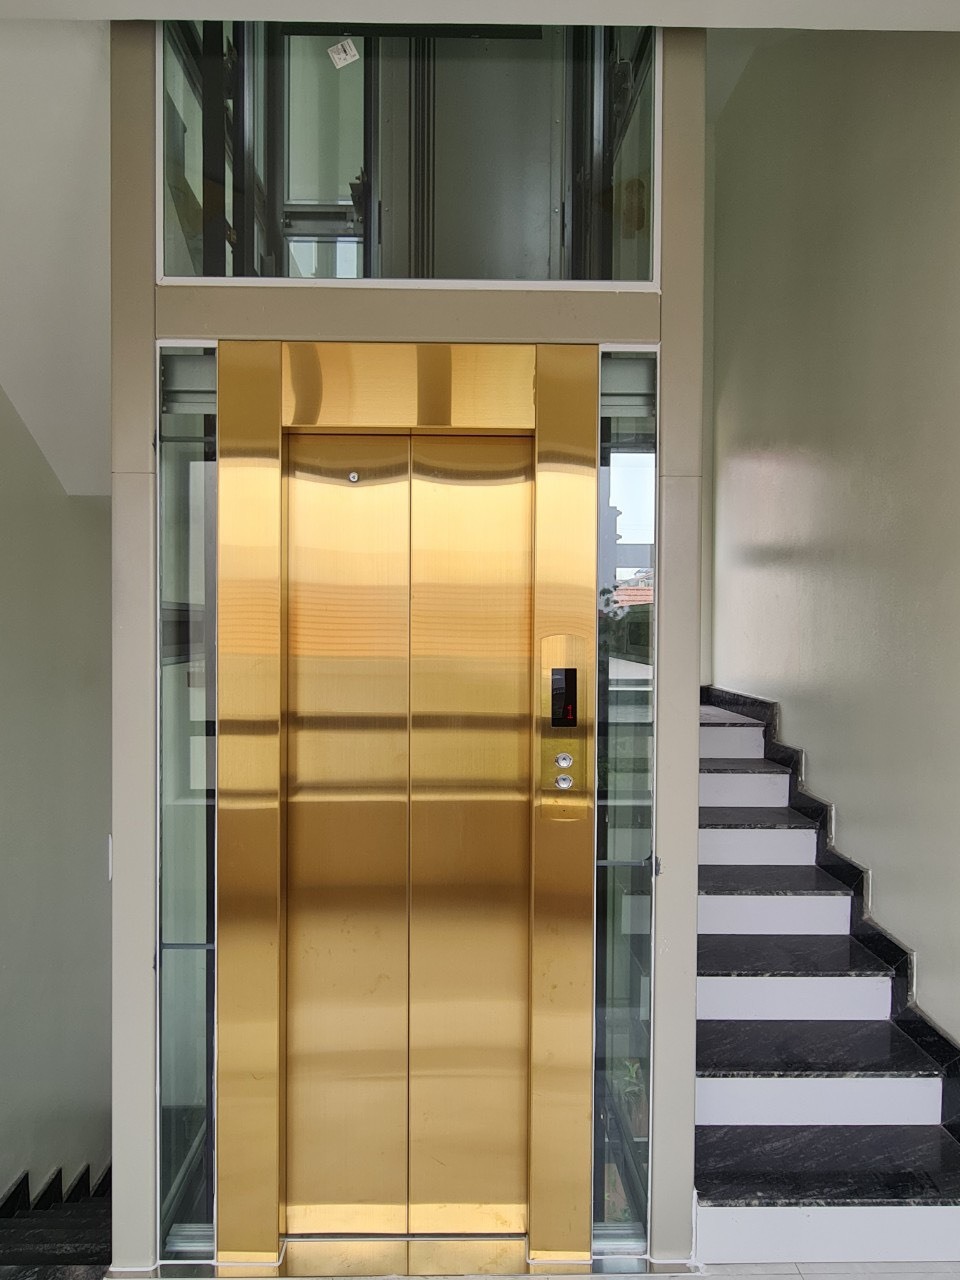 Chi phí bảo trì thang máy gia đình hàng tháng tại Hà Nội